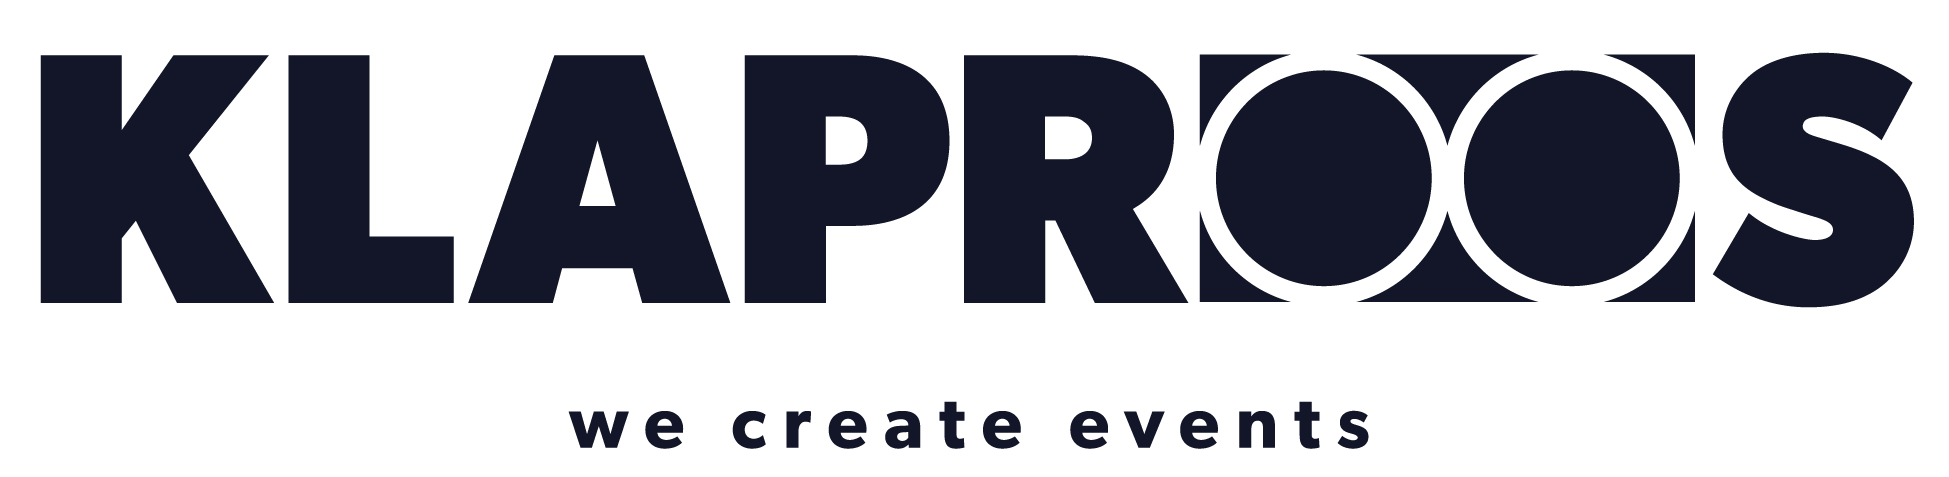 Logo Klaproos - we create events